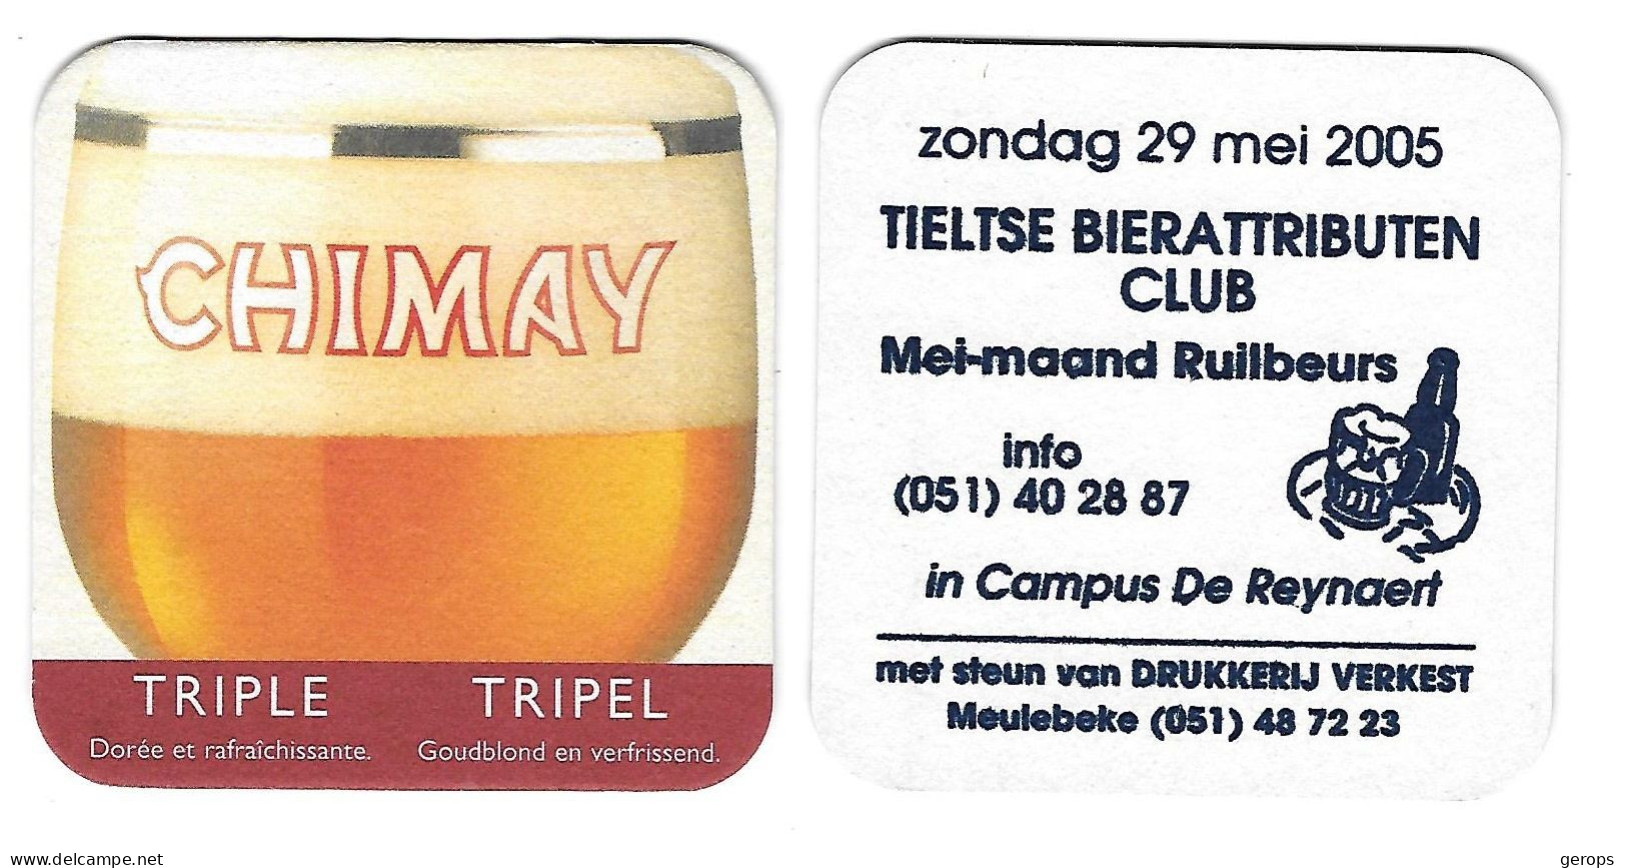 11a Chimay  Tripel Rv Tieltse BA Club 29 Mei 2005 - Sous-bocks